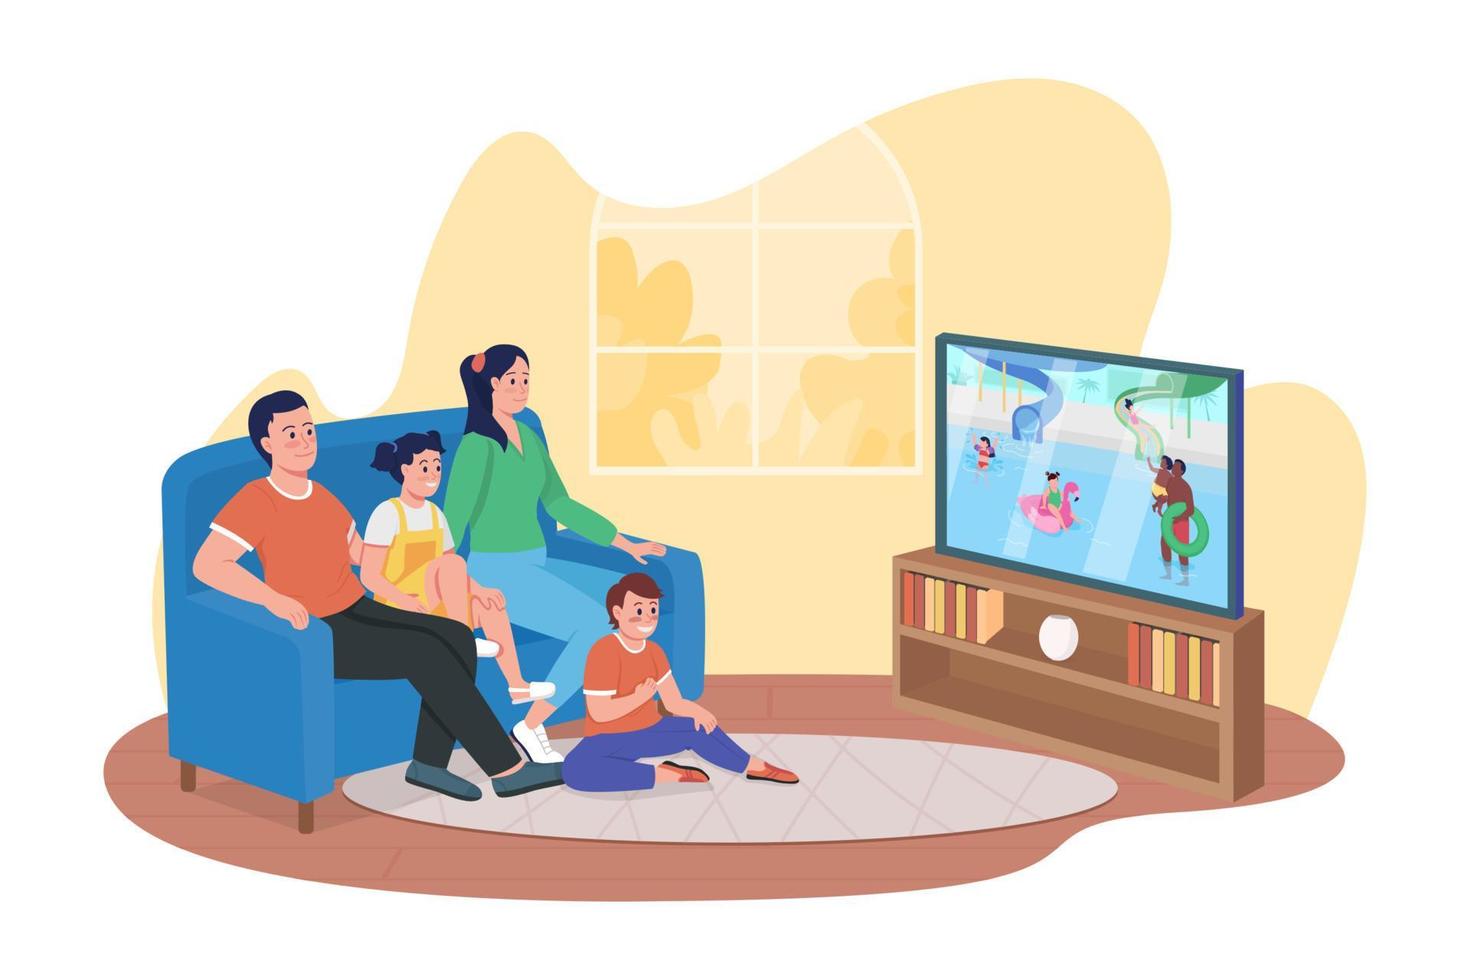 viendo el programa de entretenimiento 2d vector ilustración aislada. miembros de la familia sonrientes sentados en personajes planos de sofá sobre fondo de dibujos animados. pasar tiempo juntos en casa colorida escena